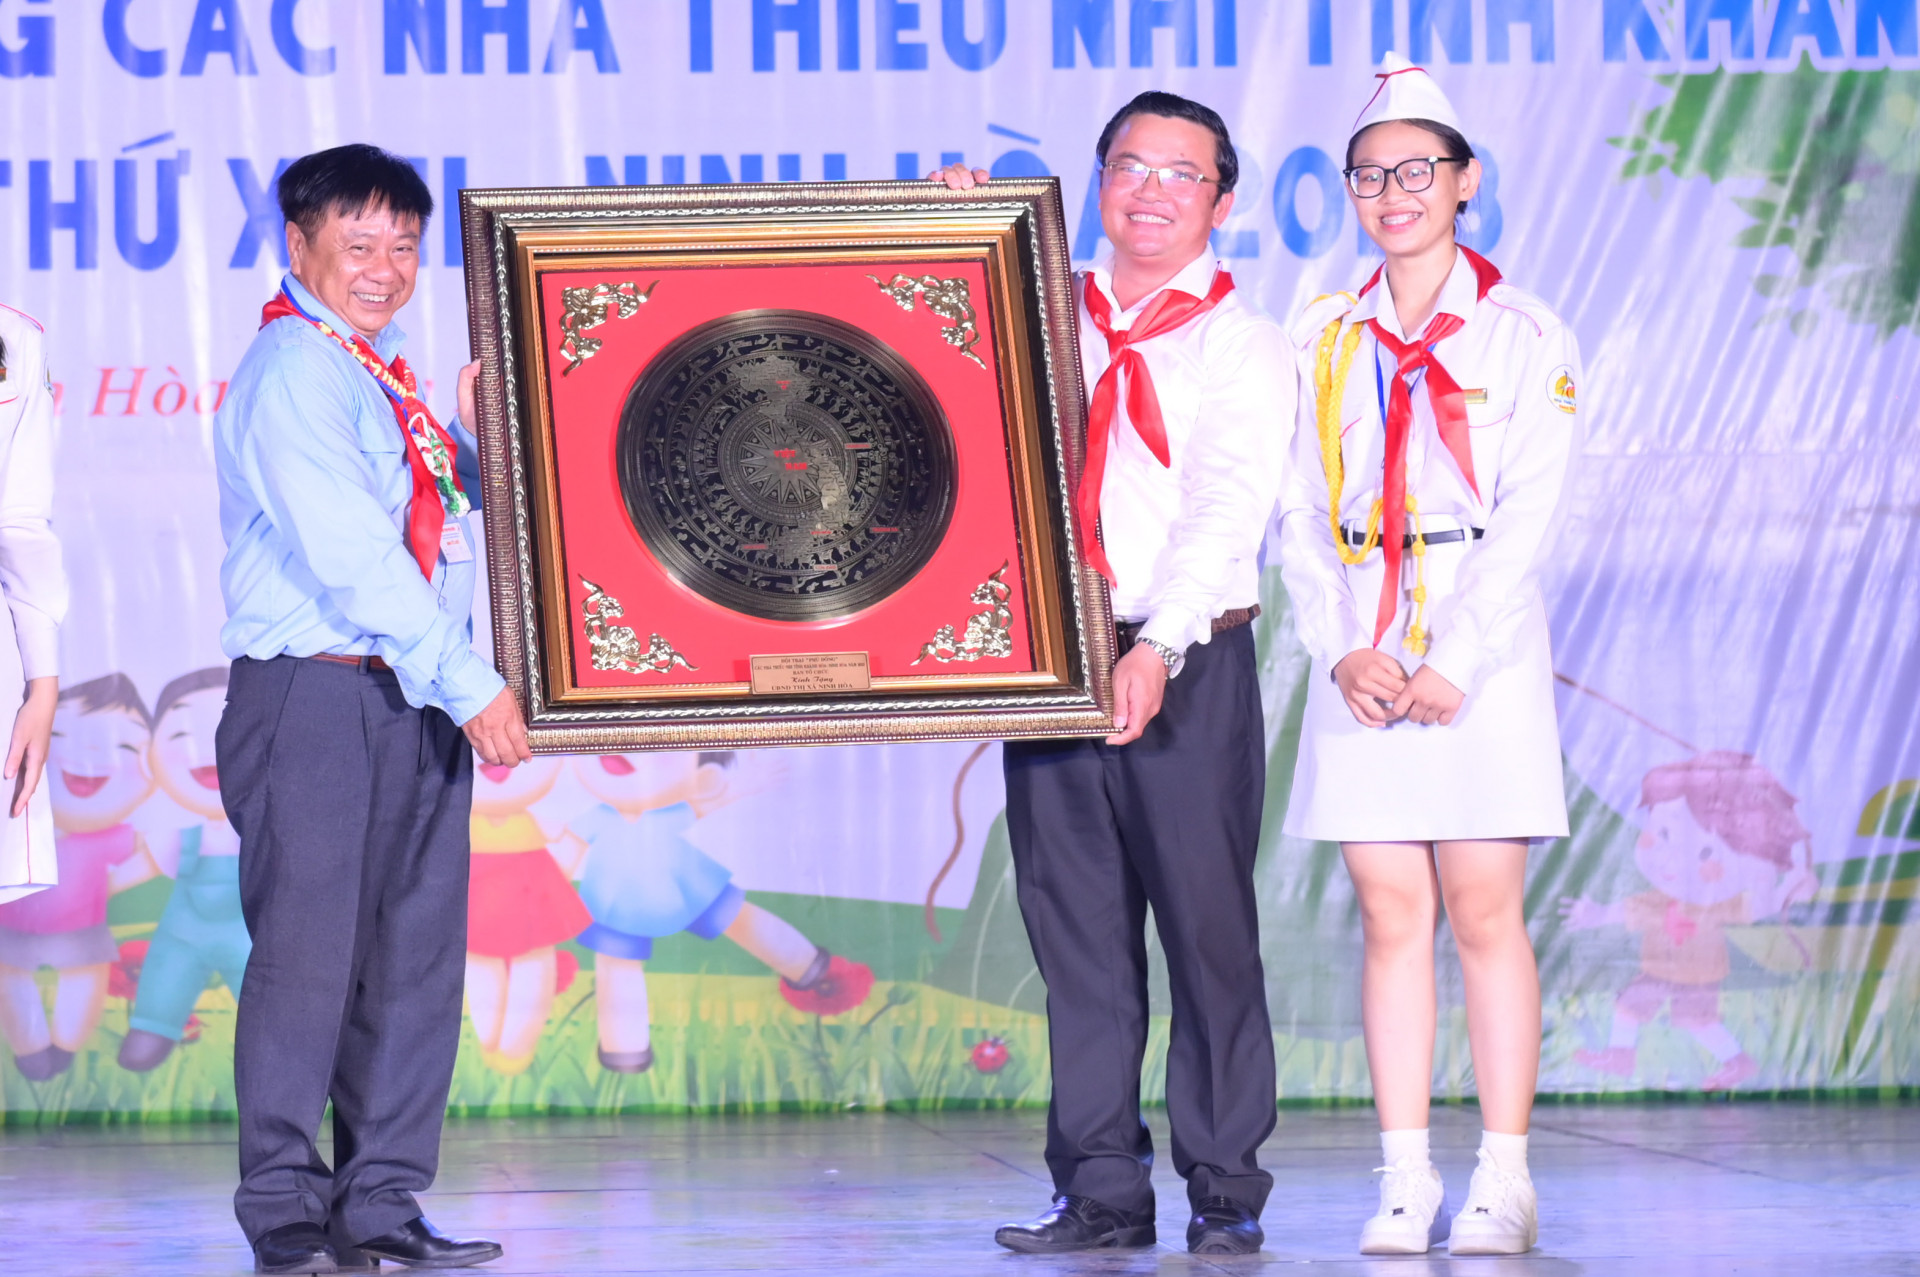 Nhà Thiếu nhi tỉnh tặng quà lưu niệm cho UBND thị xã Ninh Hoà, địa phương đăng cai tổ chức hội trại.